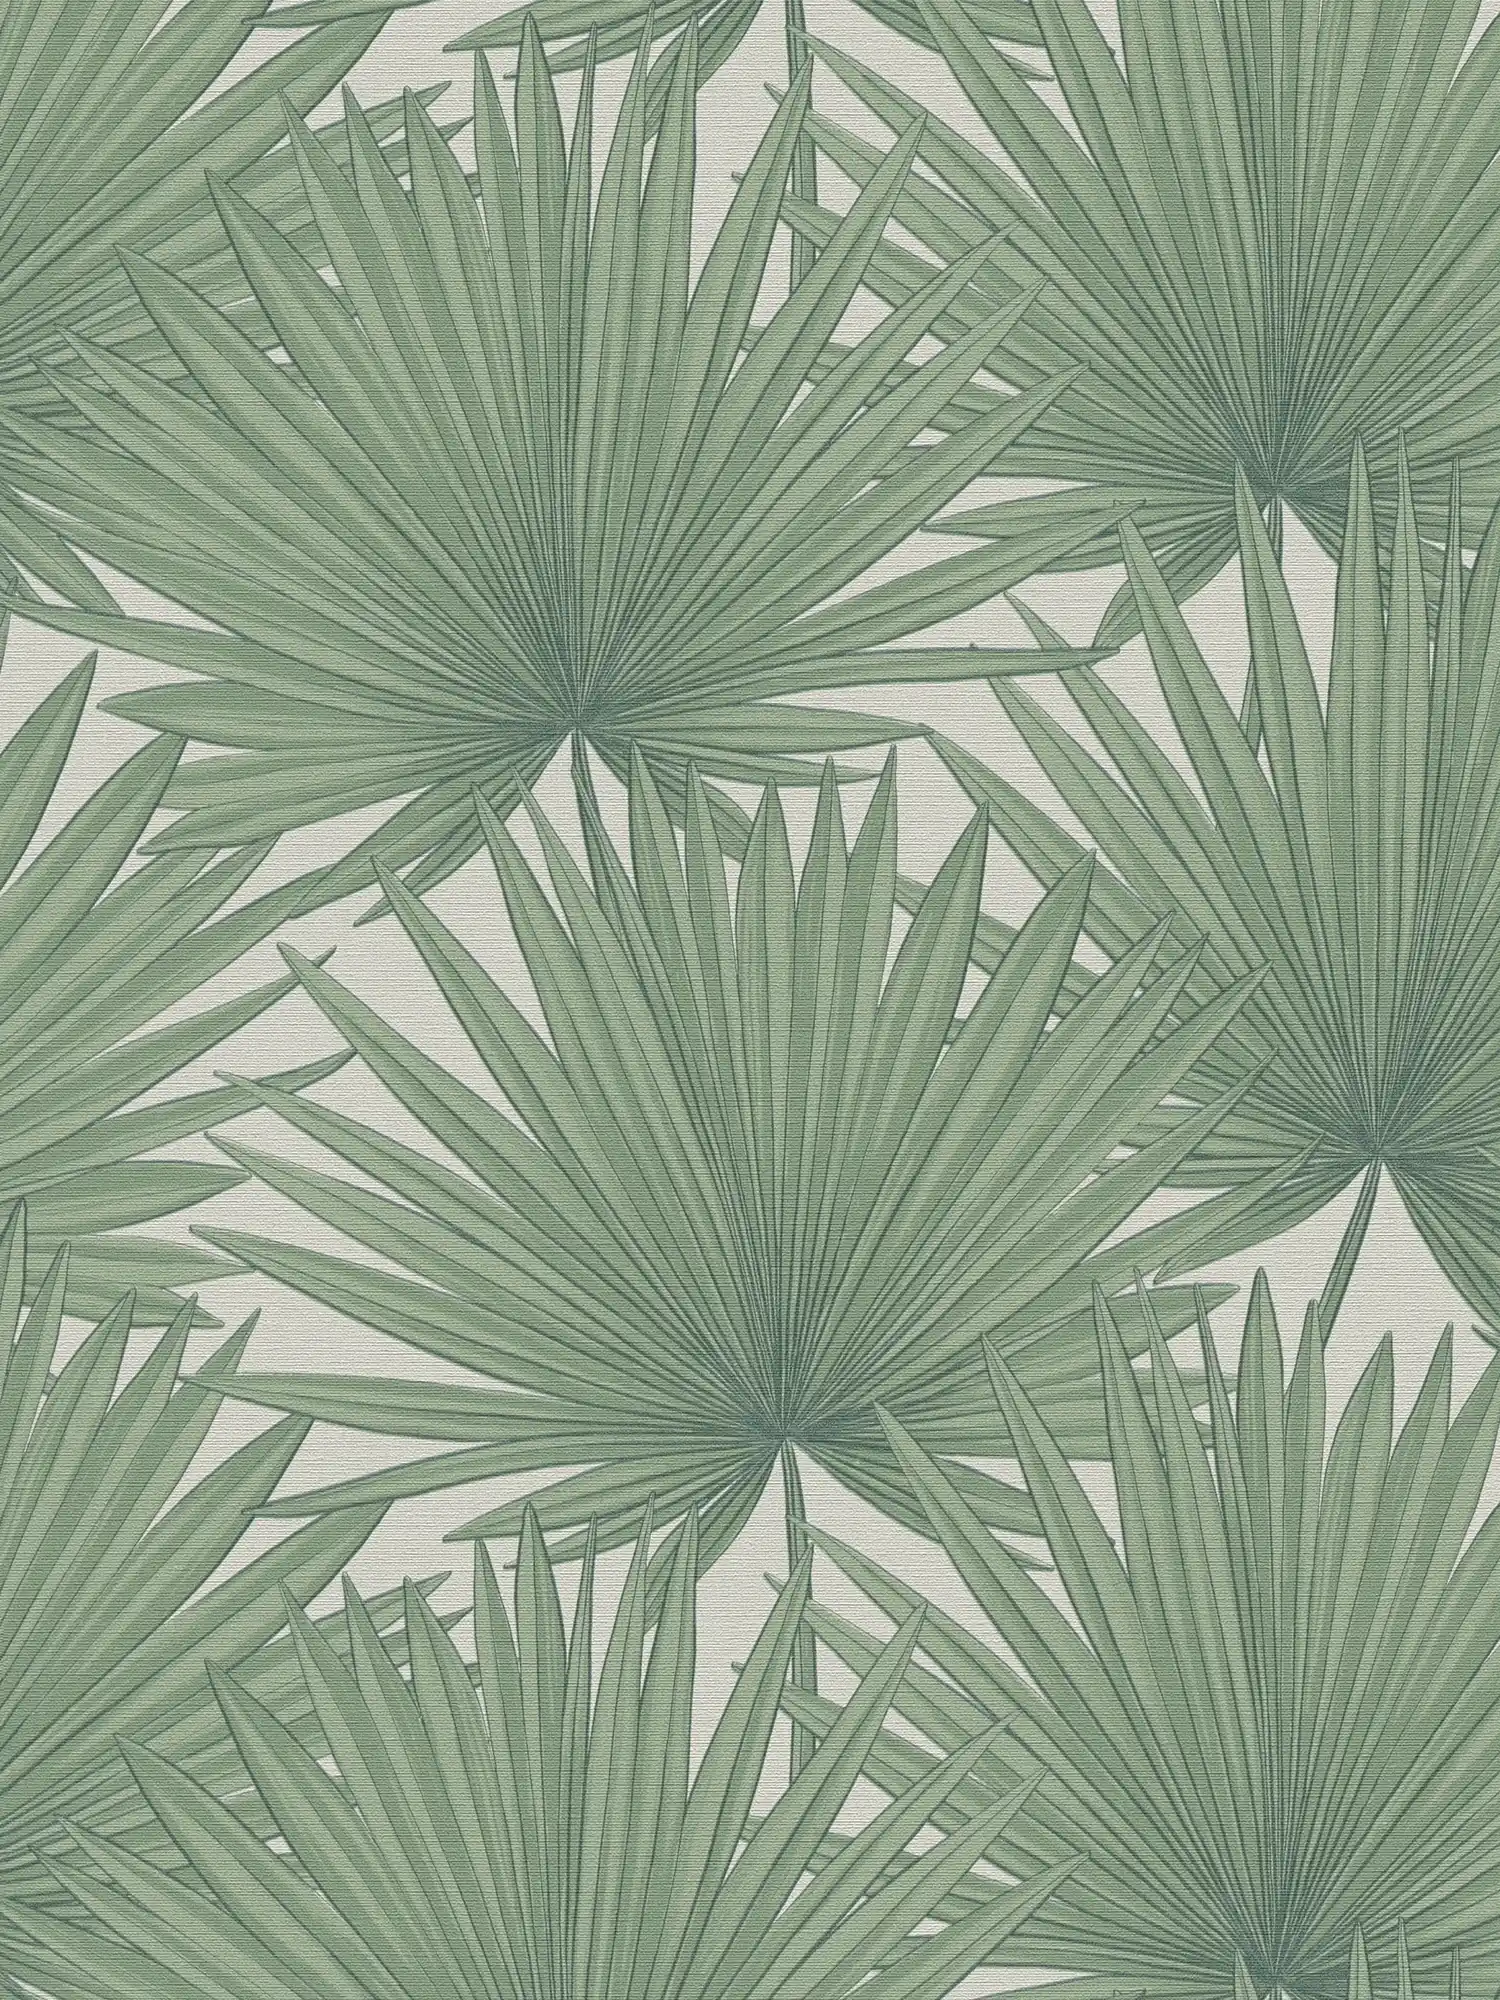         Vliestapete im Dschungelstil – Grün, Weiß
    